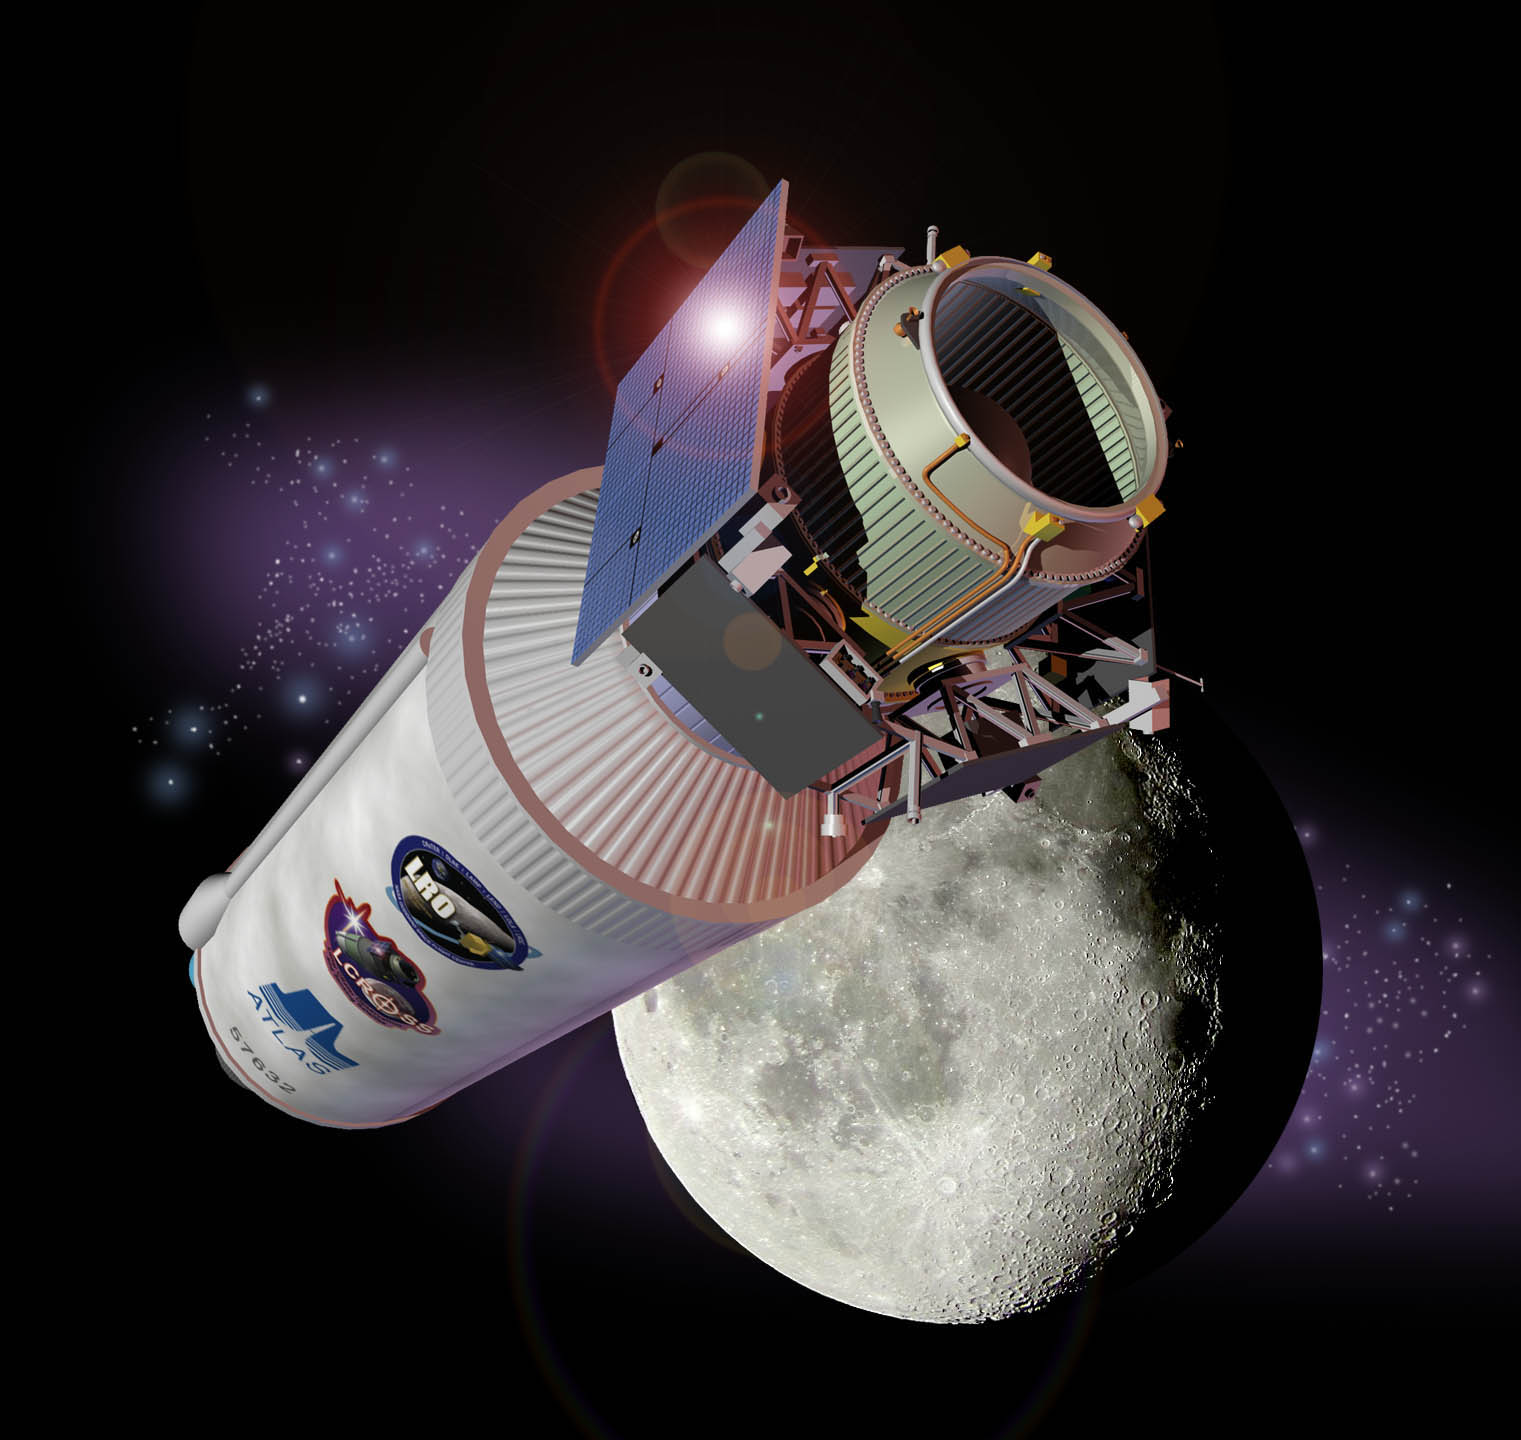 NASA LCROSS - NASA Lunar Crater Observation and Sensing Satellite - космический аппарат для наблюдения и зондирования лунных кратеров